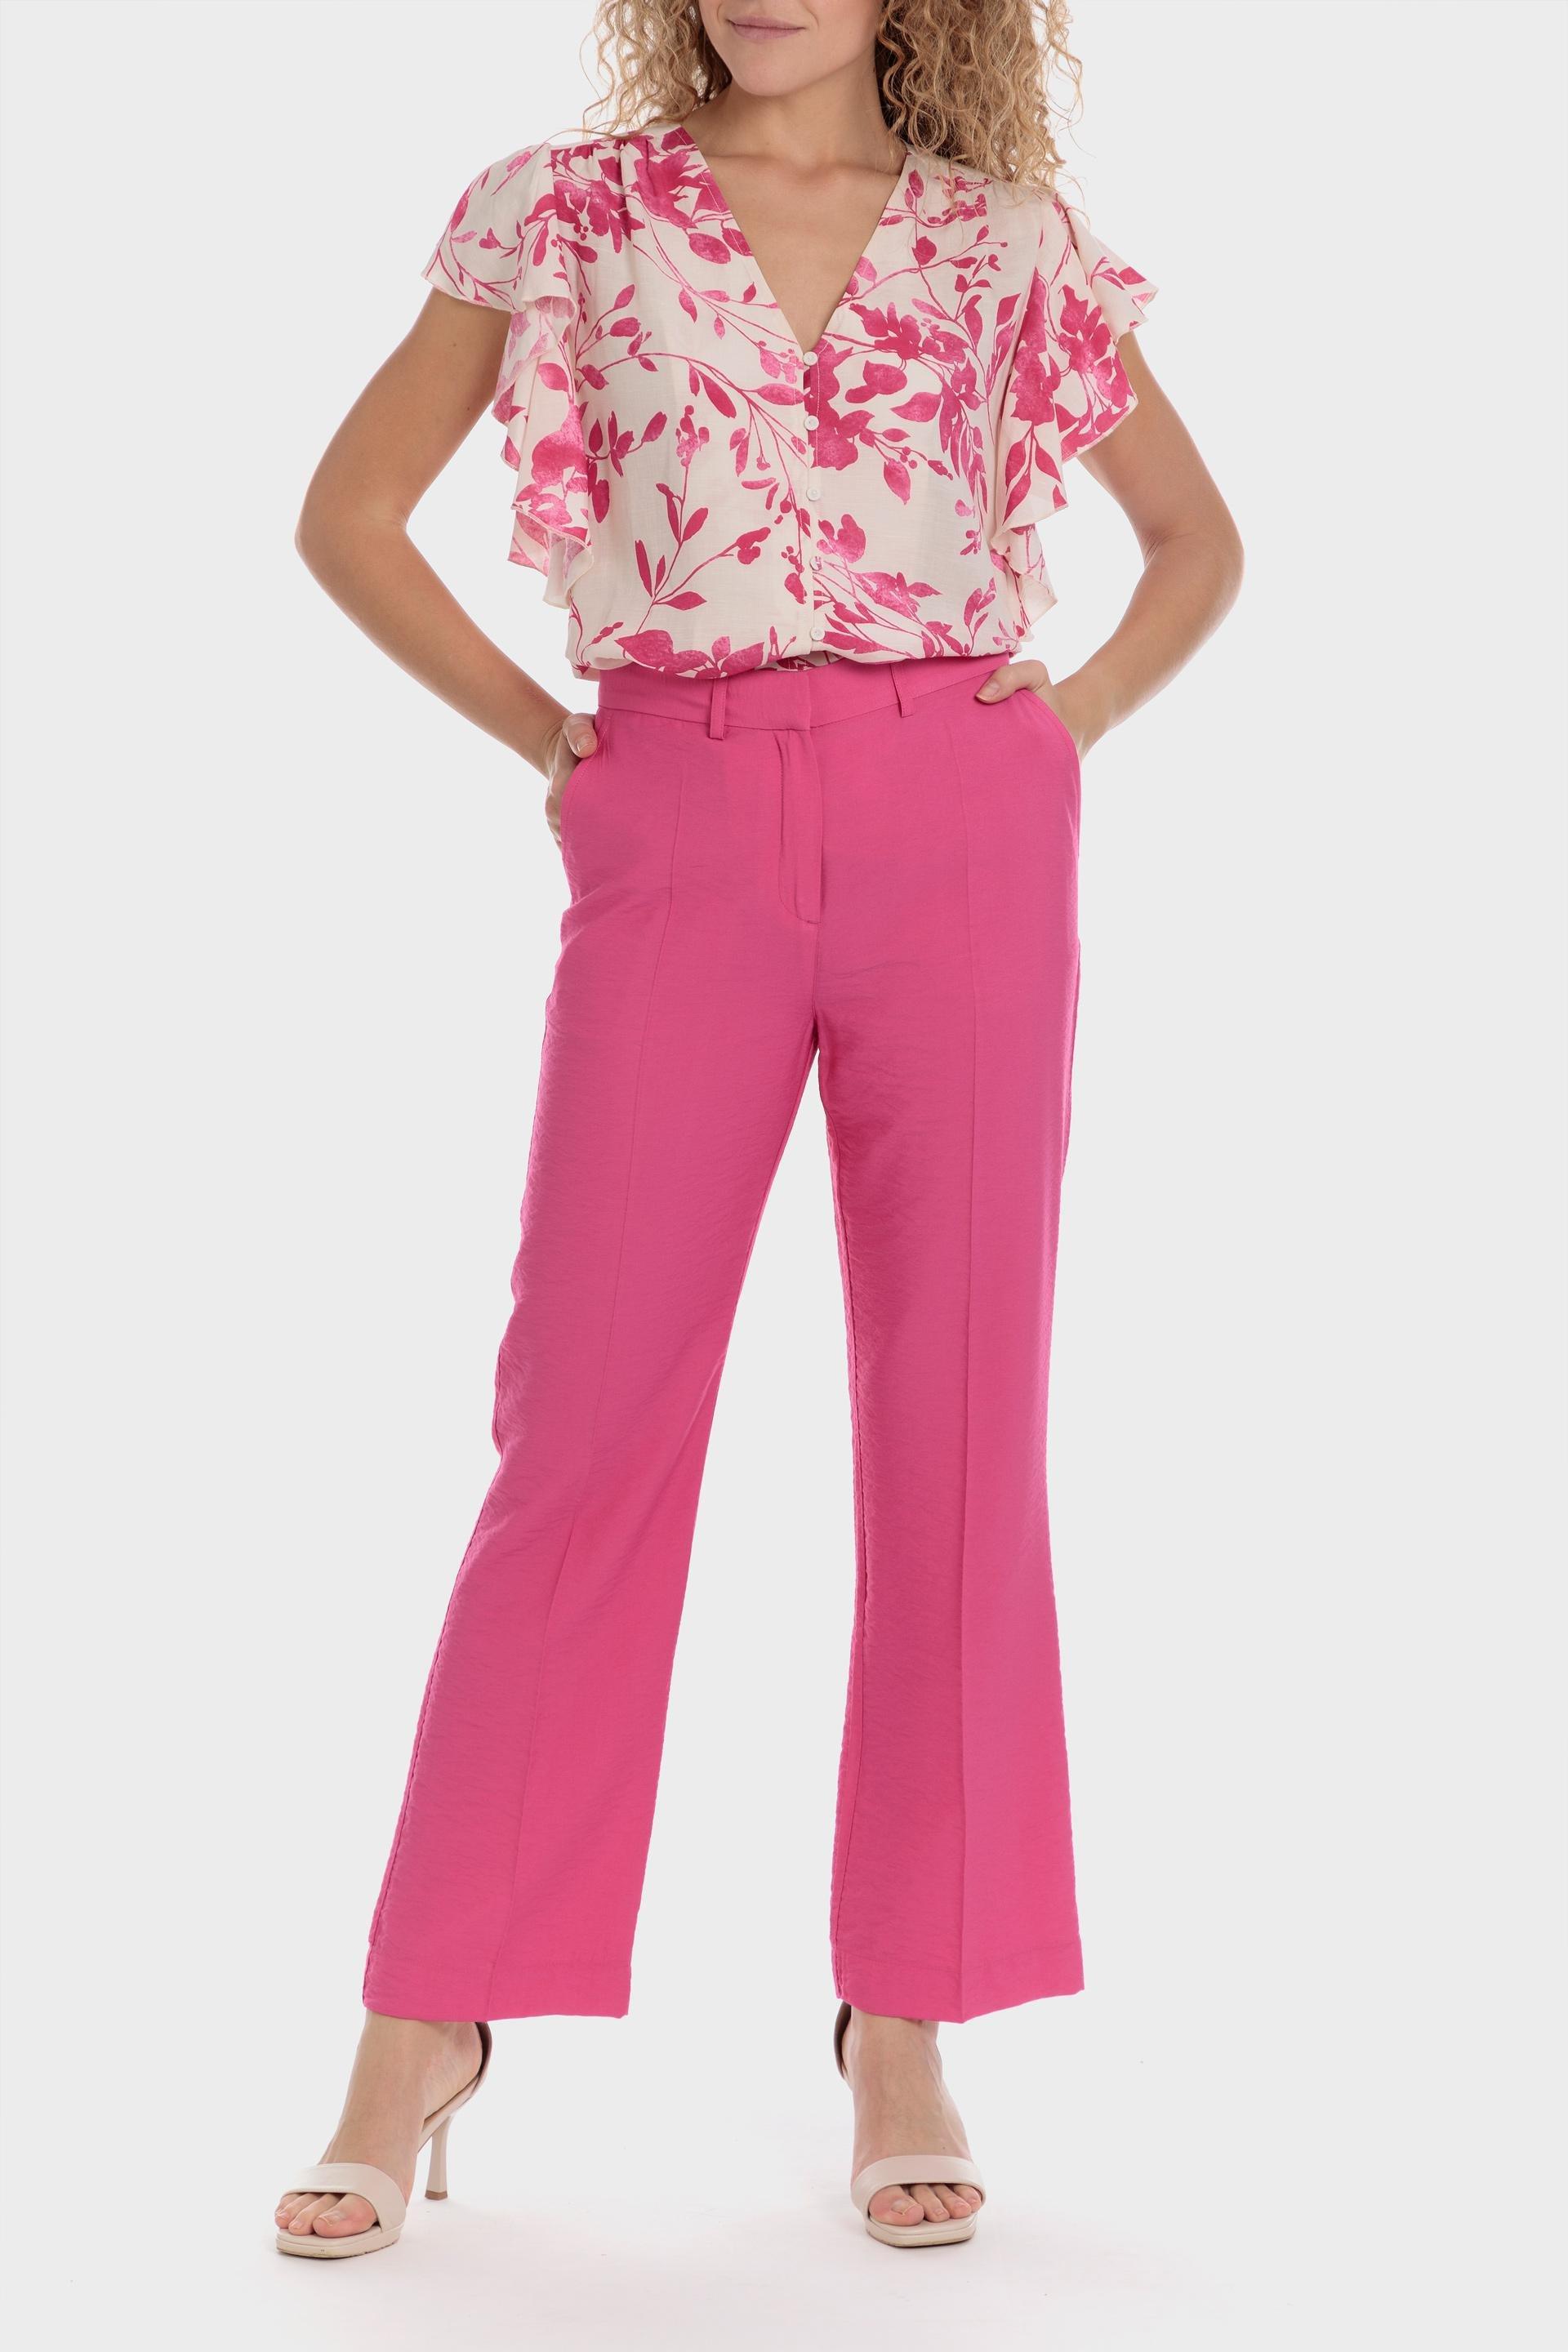 Punt Roma - Pink Printed Linen Shirt